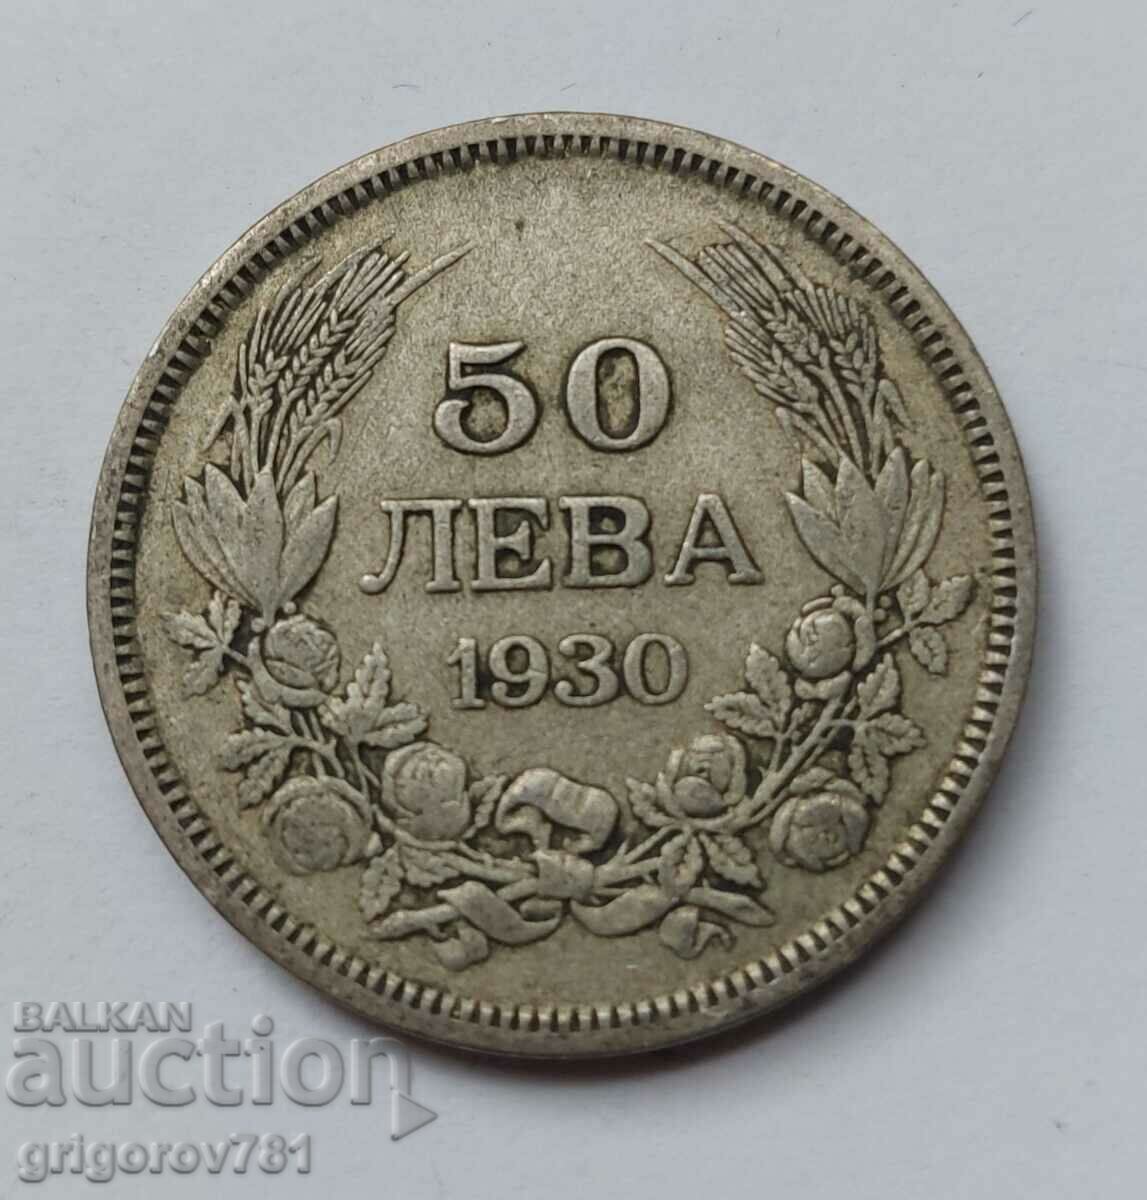 Ασήμι 50 λέβα Βουλγαρία 1930 - ασημένιο νόμισμα #67